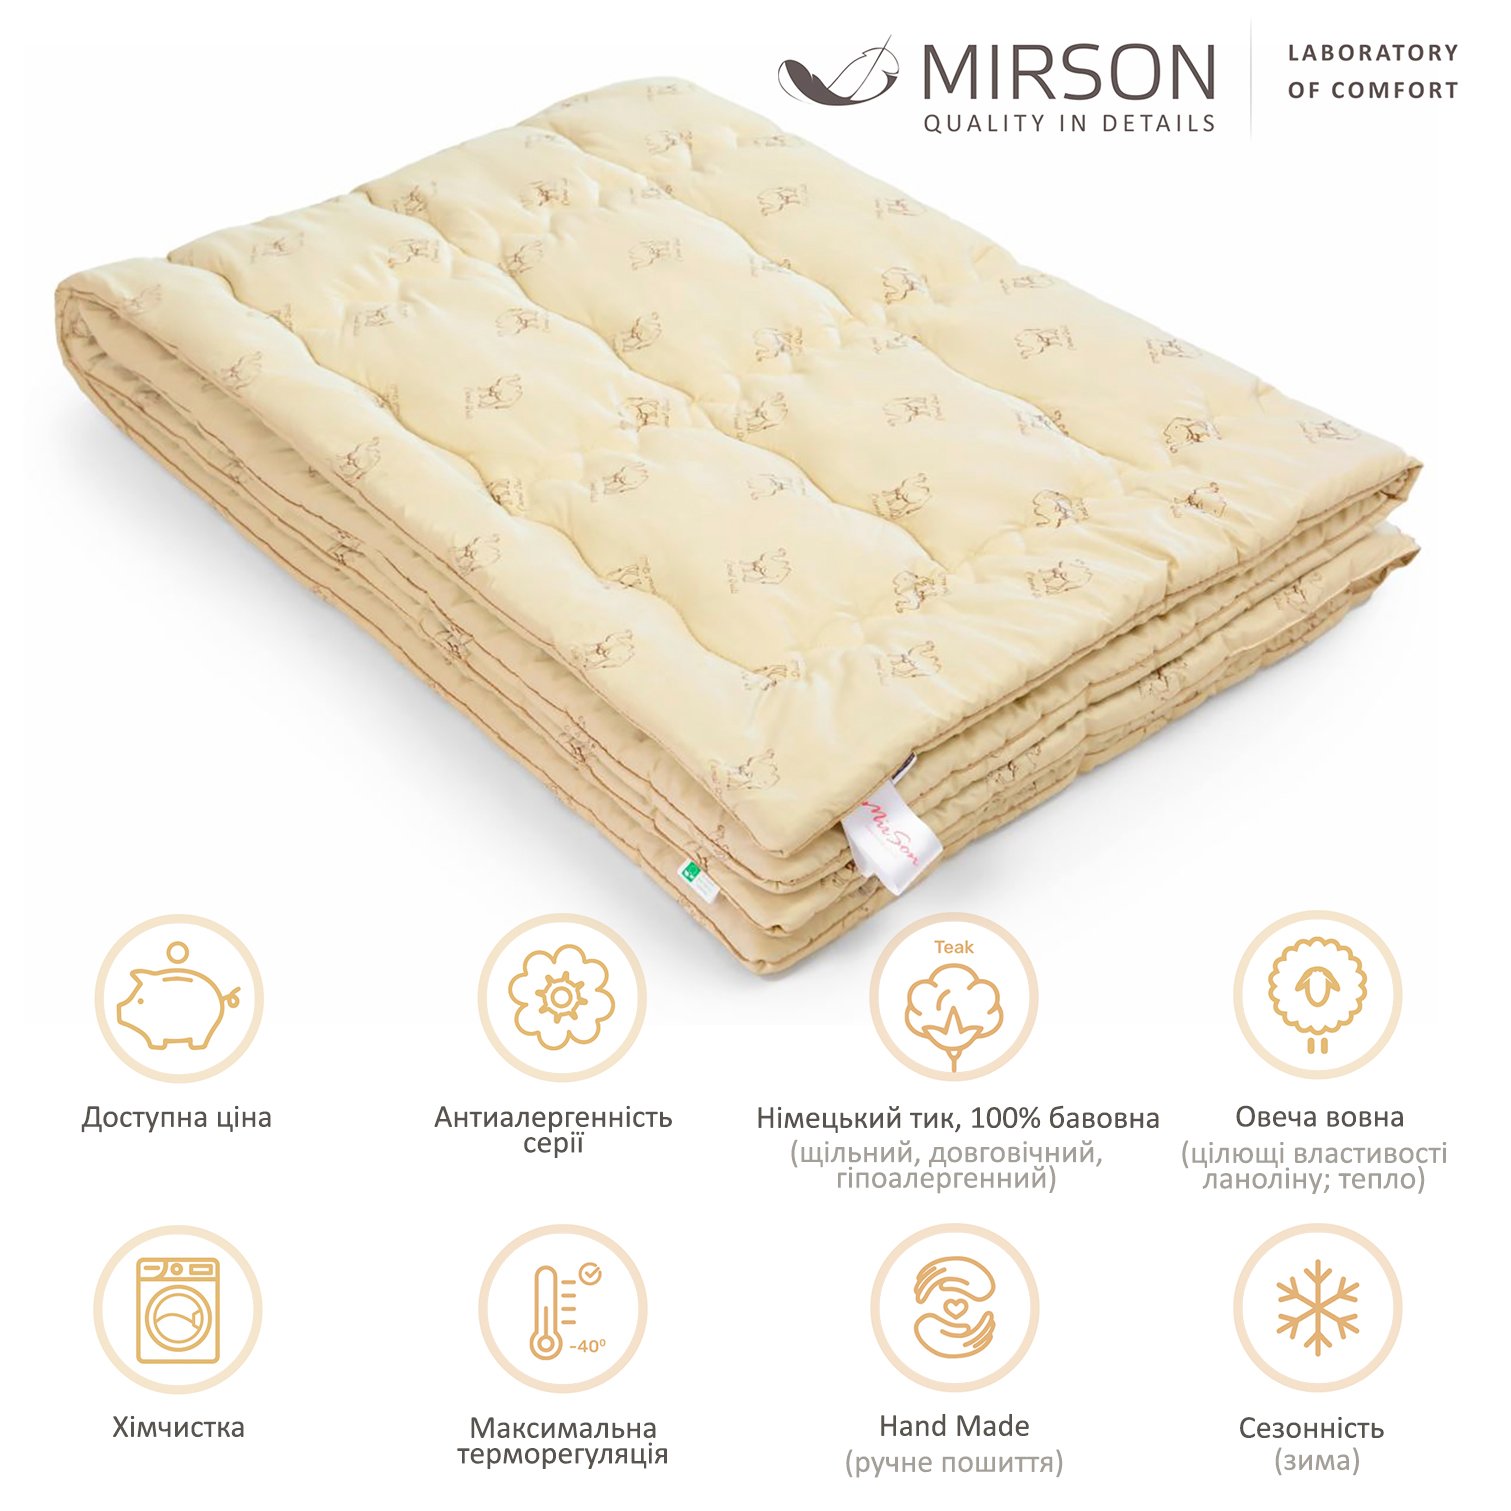 Одеяло шерстяное MirSon Gold Camel Hand Made №175, зимнее, 110x140 см, кремовое - фото 4